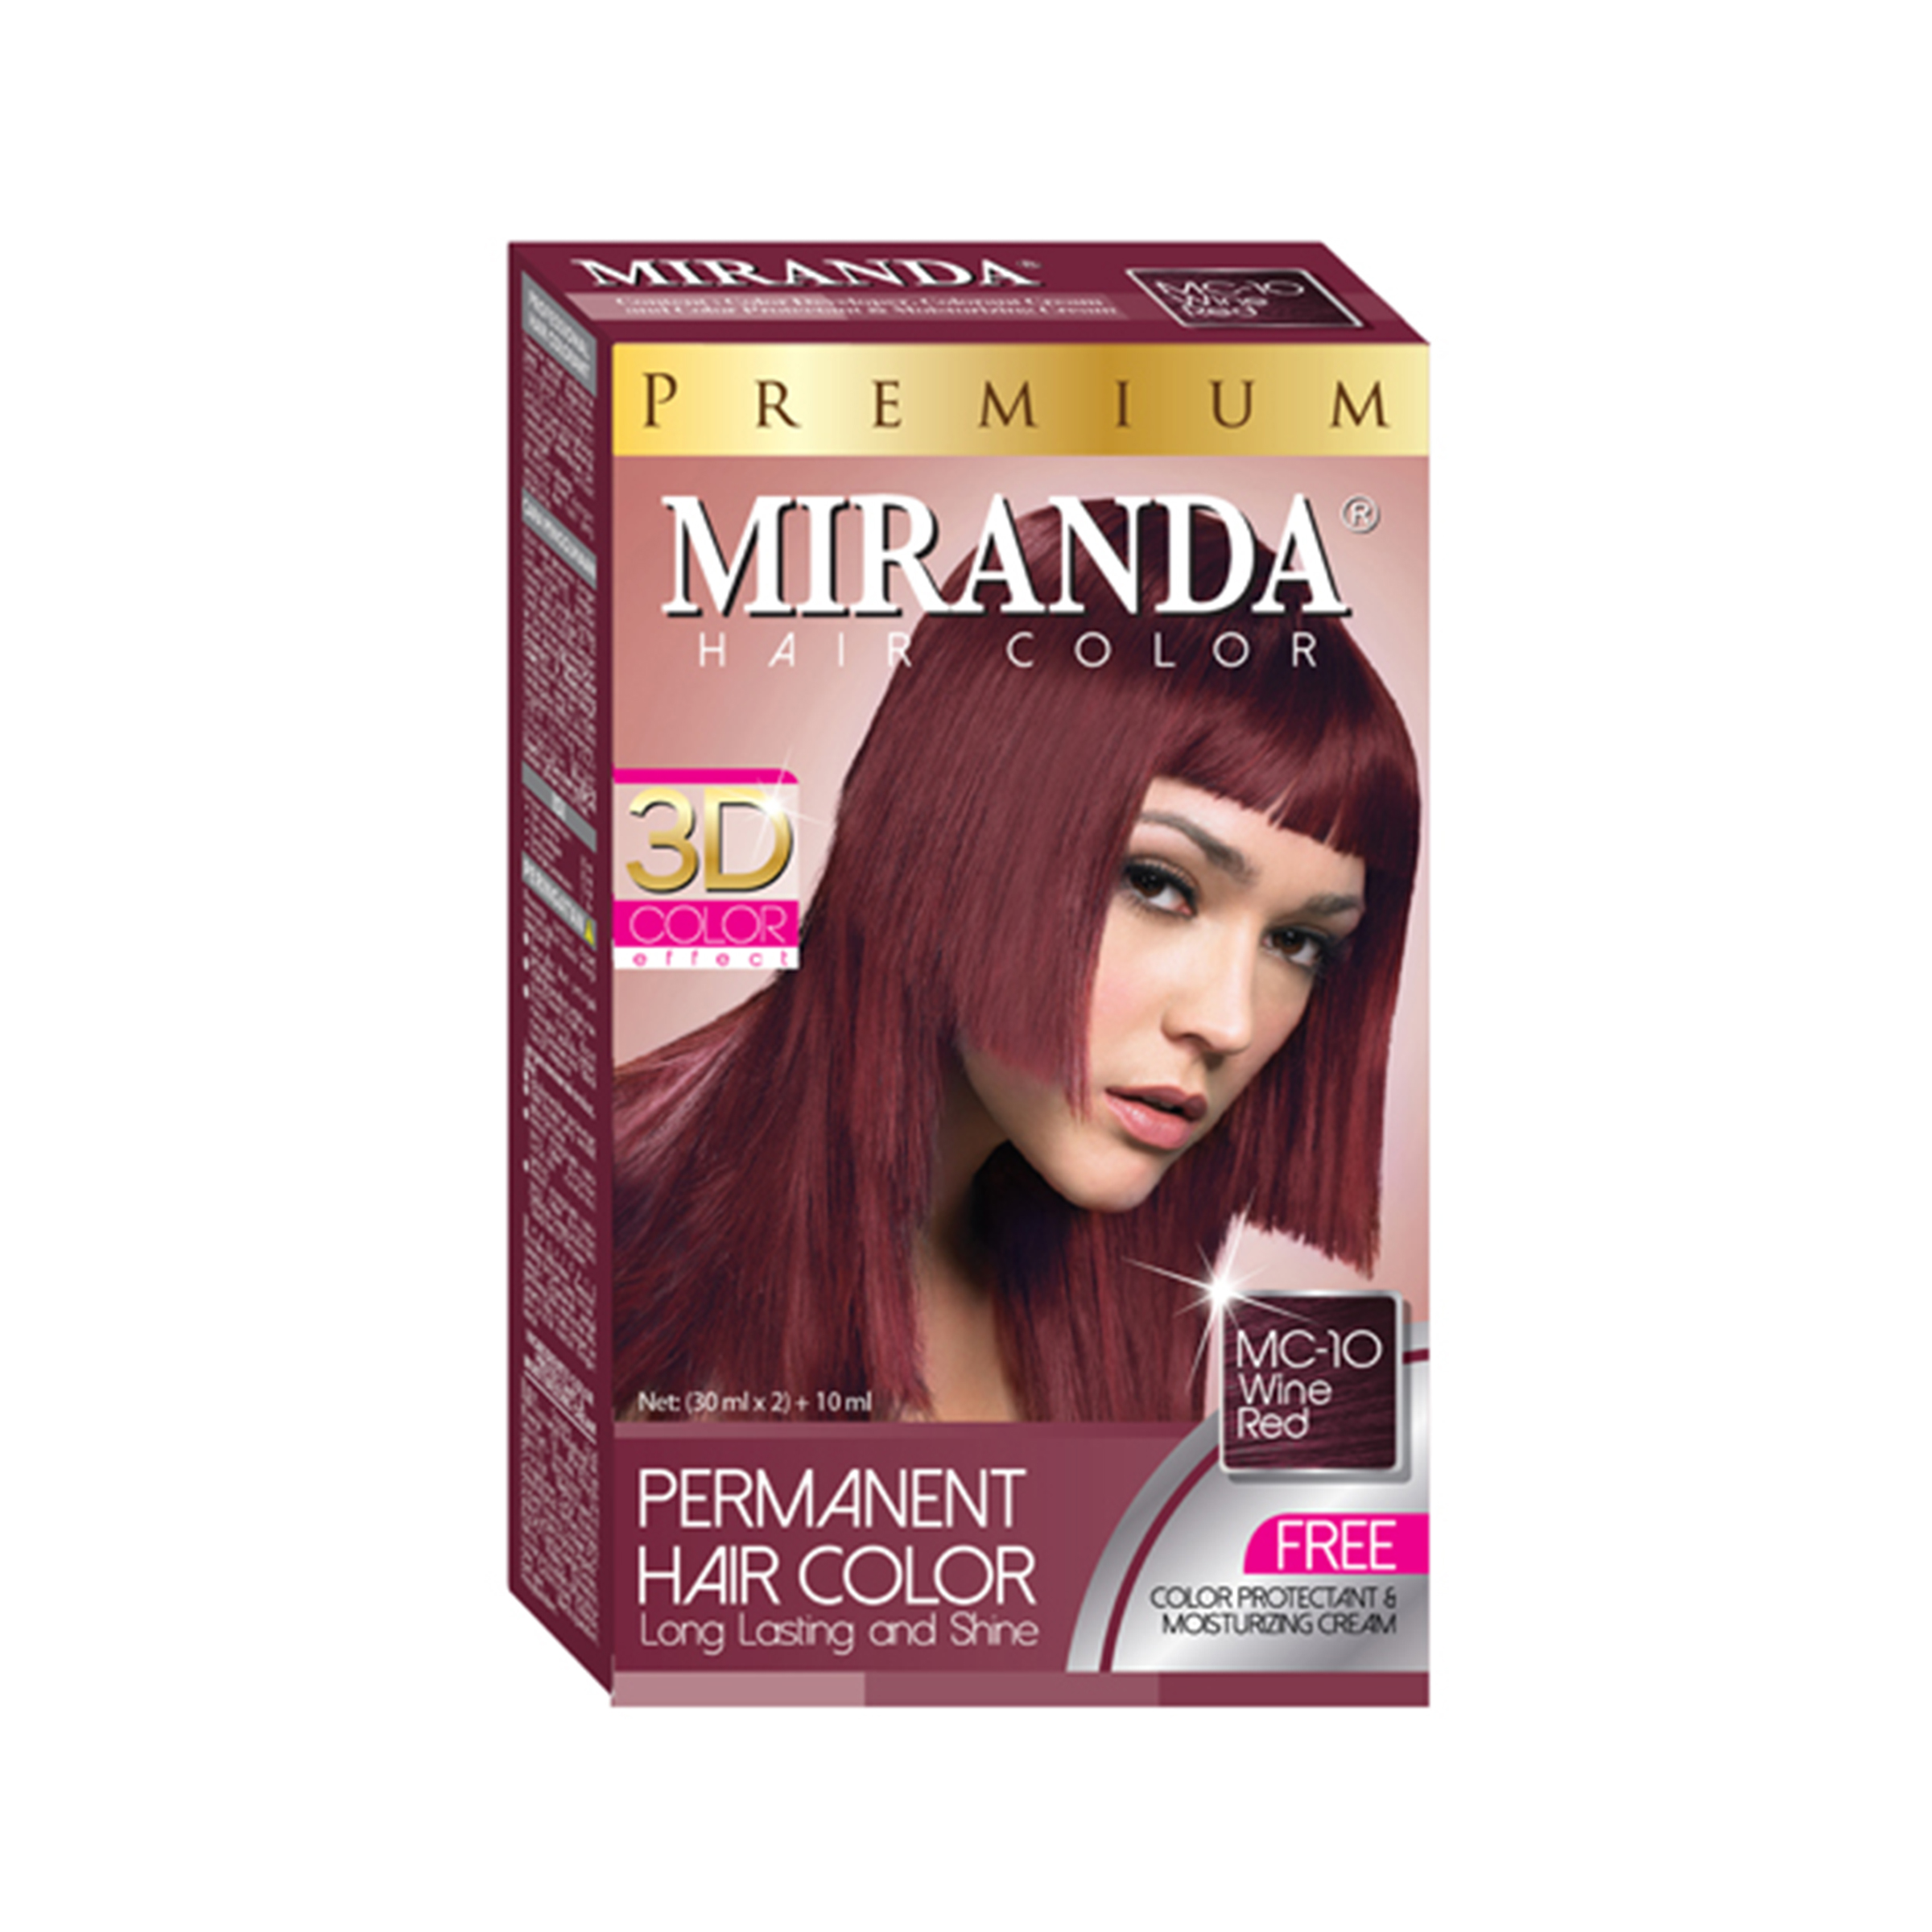 Miranda Premium Hair Color MC-10 Wine Red 30 ml / Cat Rambut Merah Anggur